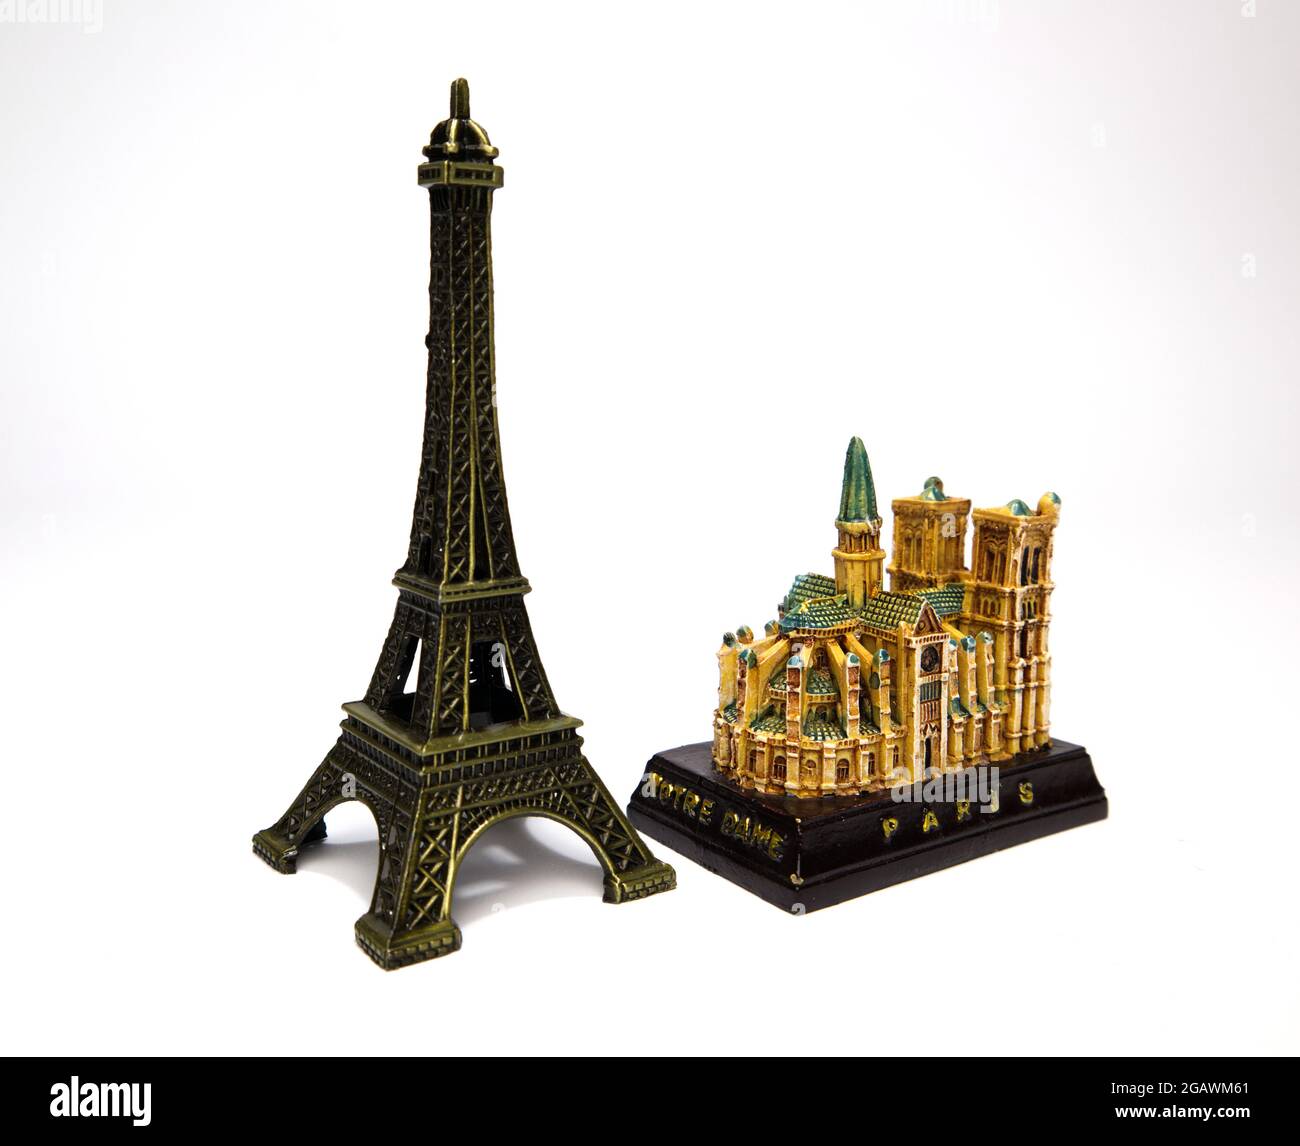 La tour Eiffel et la cathédrale notre-Dame sont des figurines isolées sur fond blanc. Souvenir de Paris. Figurines métalliques des monuments de Paris. Banque D'Images